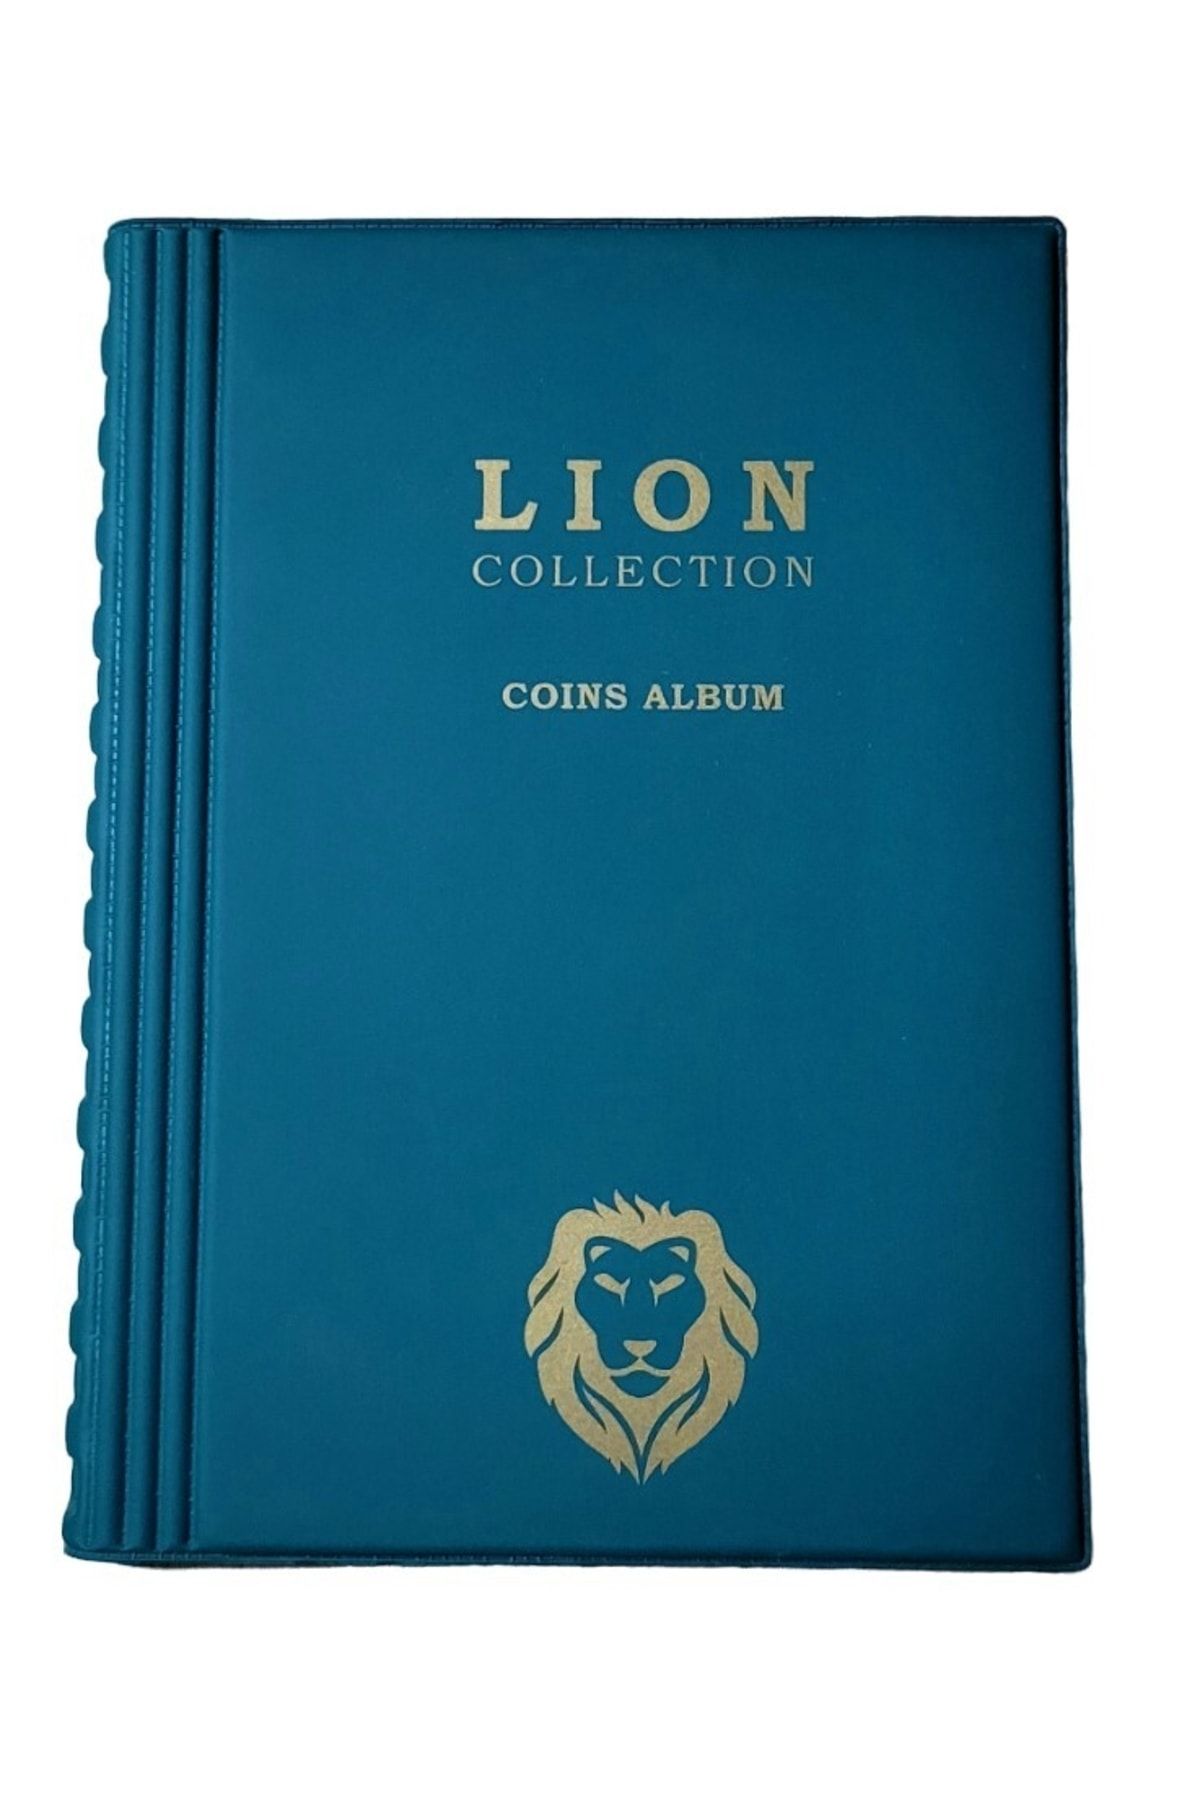 Lion , 72 Gözlü, 12 Sayfalı, Kapamalı Paralar Için Madeni Para Albümü- Yeşil Renk